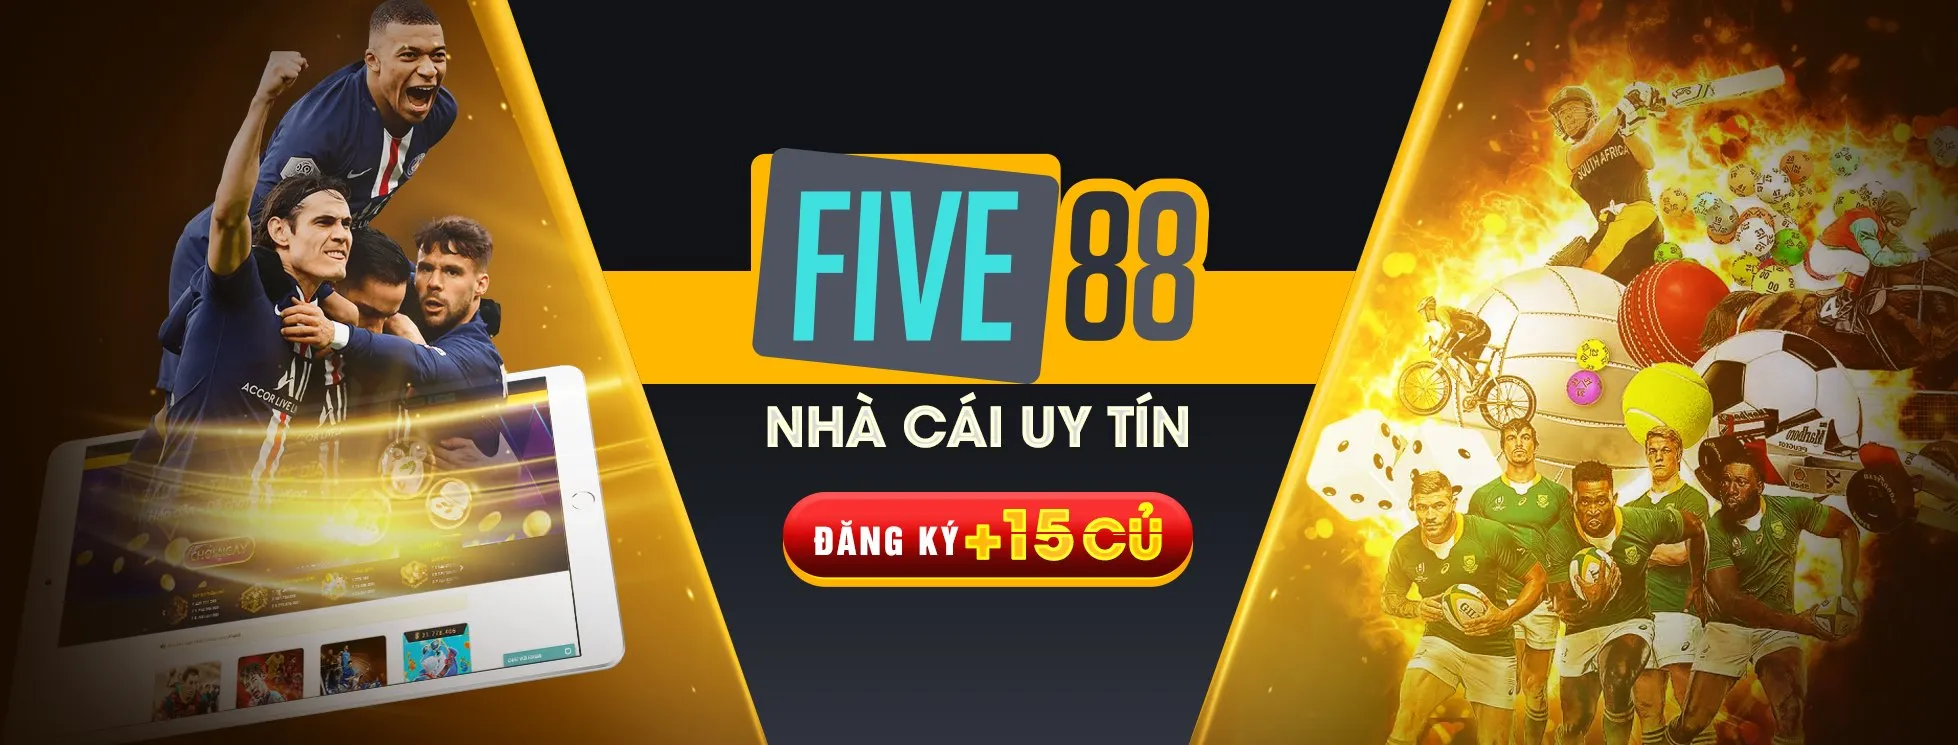 Five88 – Sân chơi đẳng cấp nhất hiện nay